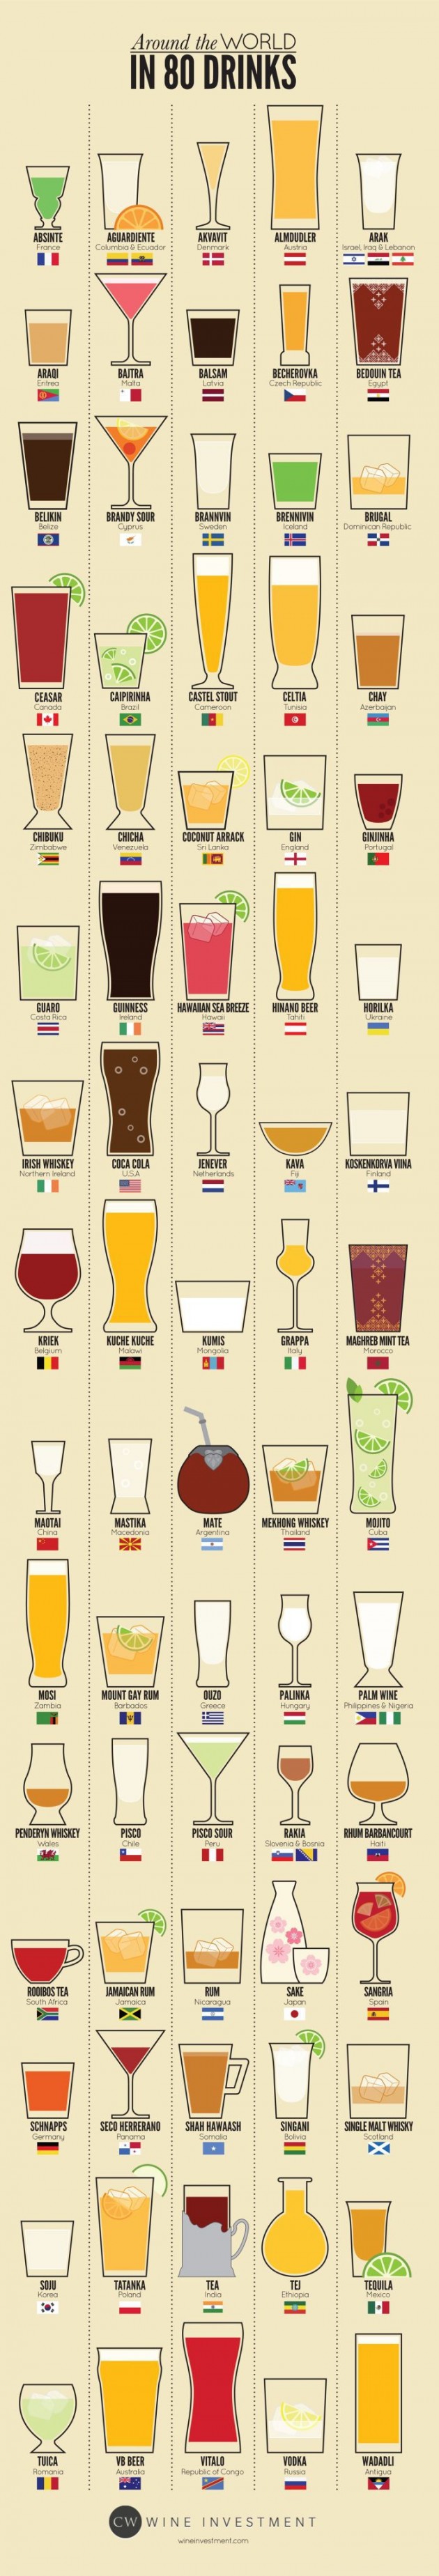 Le tour du monde des boissons par pays